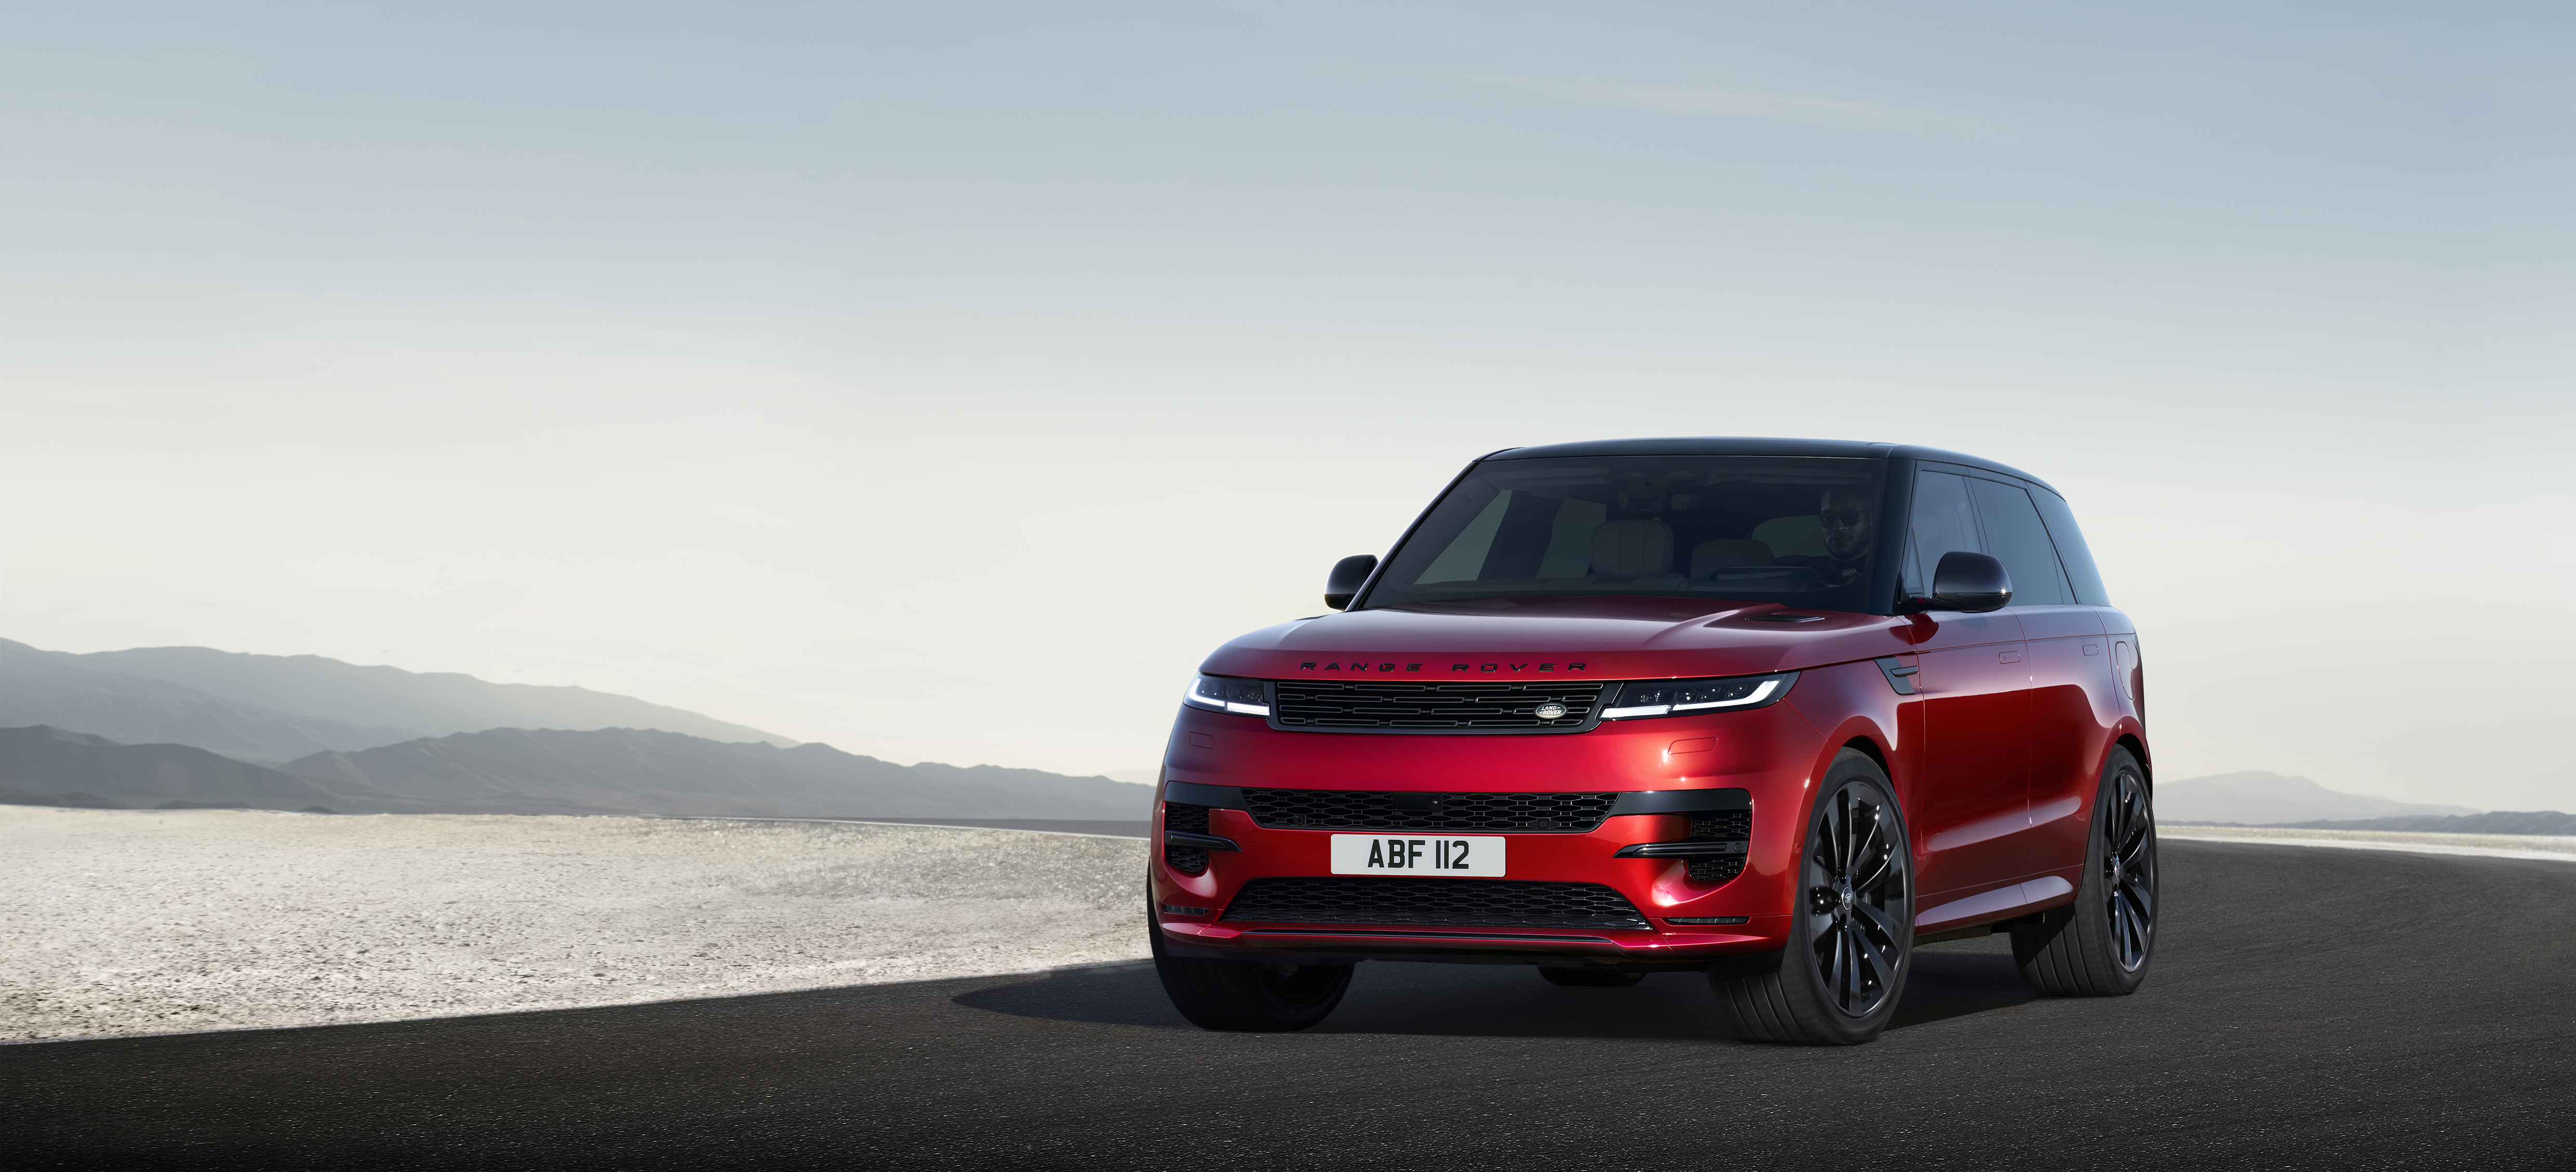 Land Rover’s New Range Rover Sport Revealed